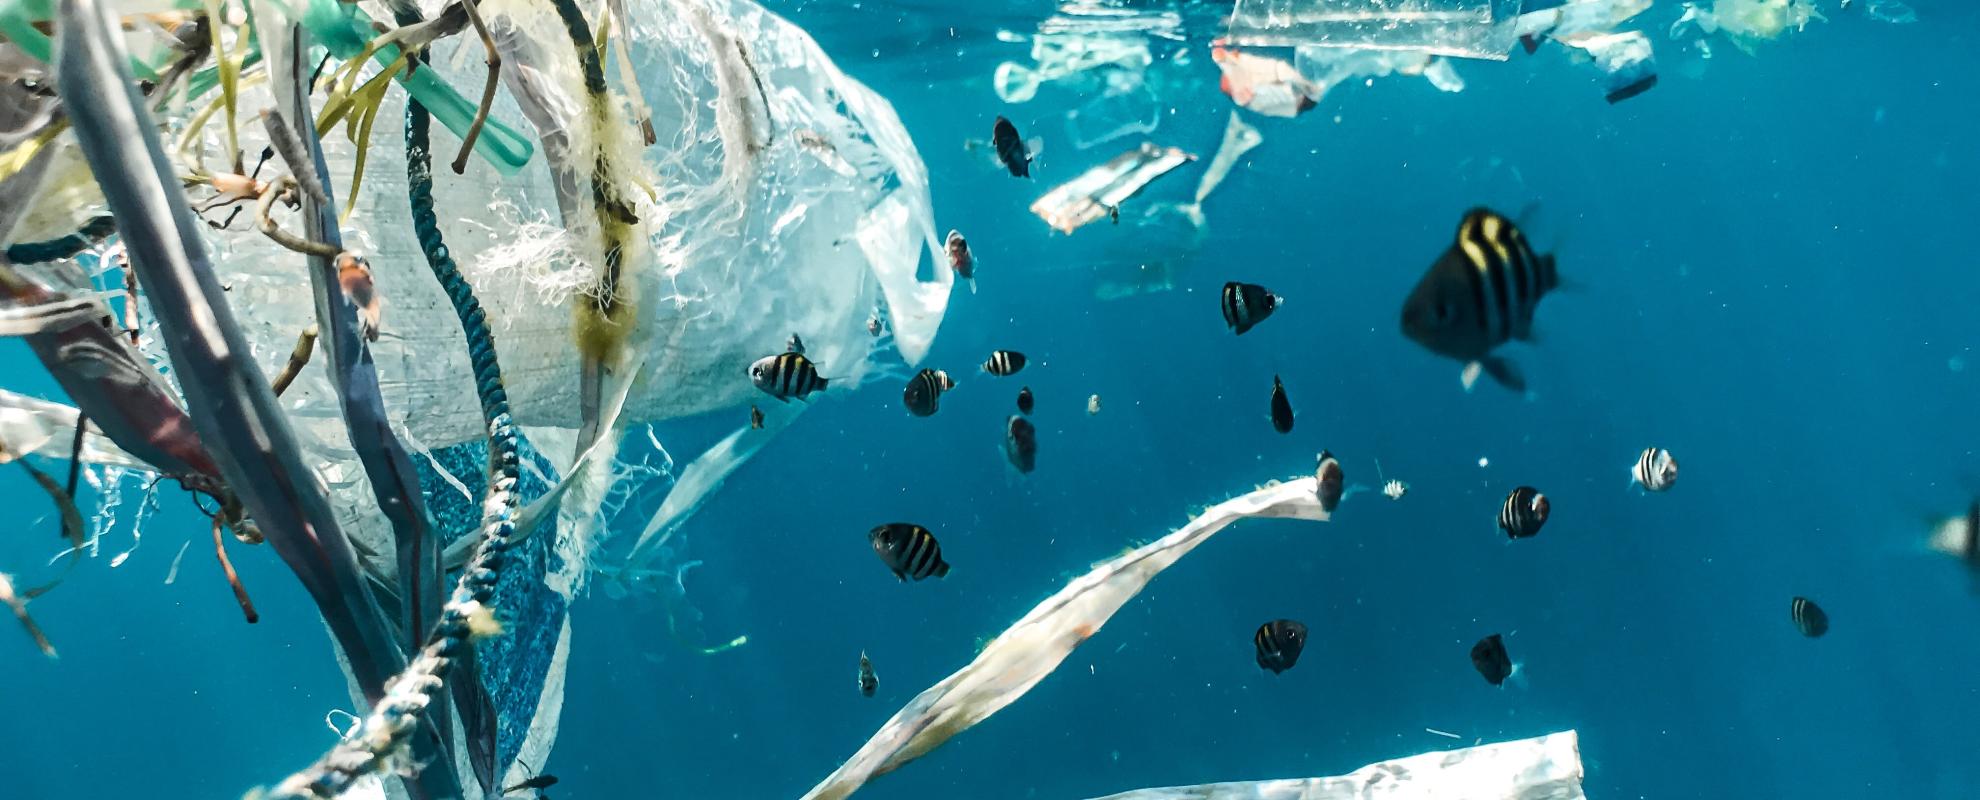 In Indonesië is plasticvervuiling overal, ook in rivieren en in de zee.